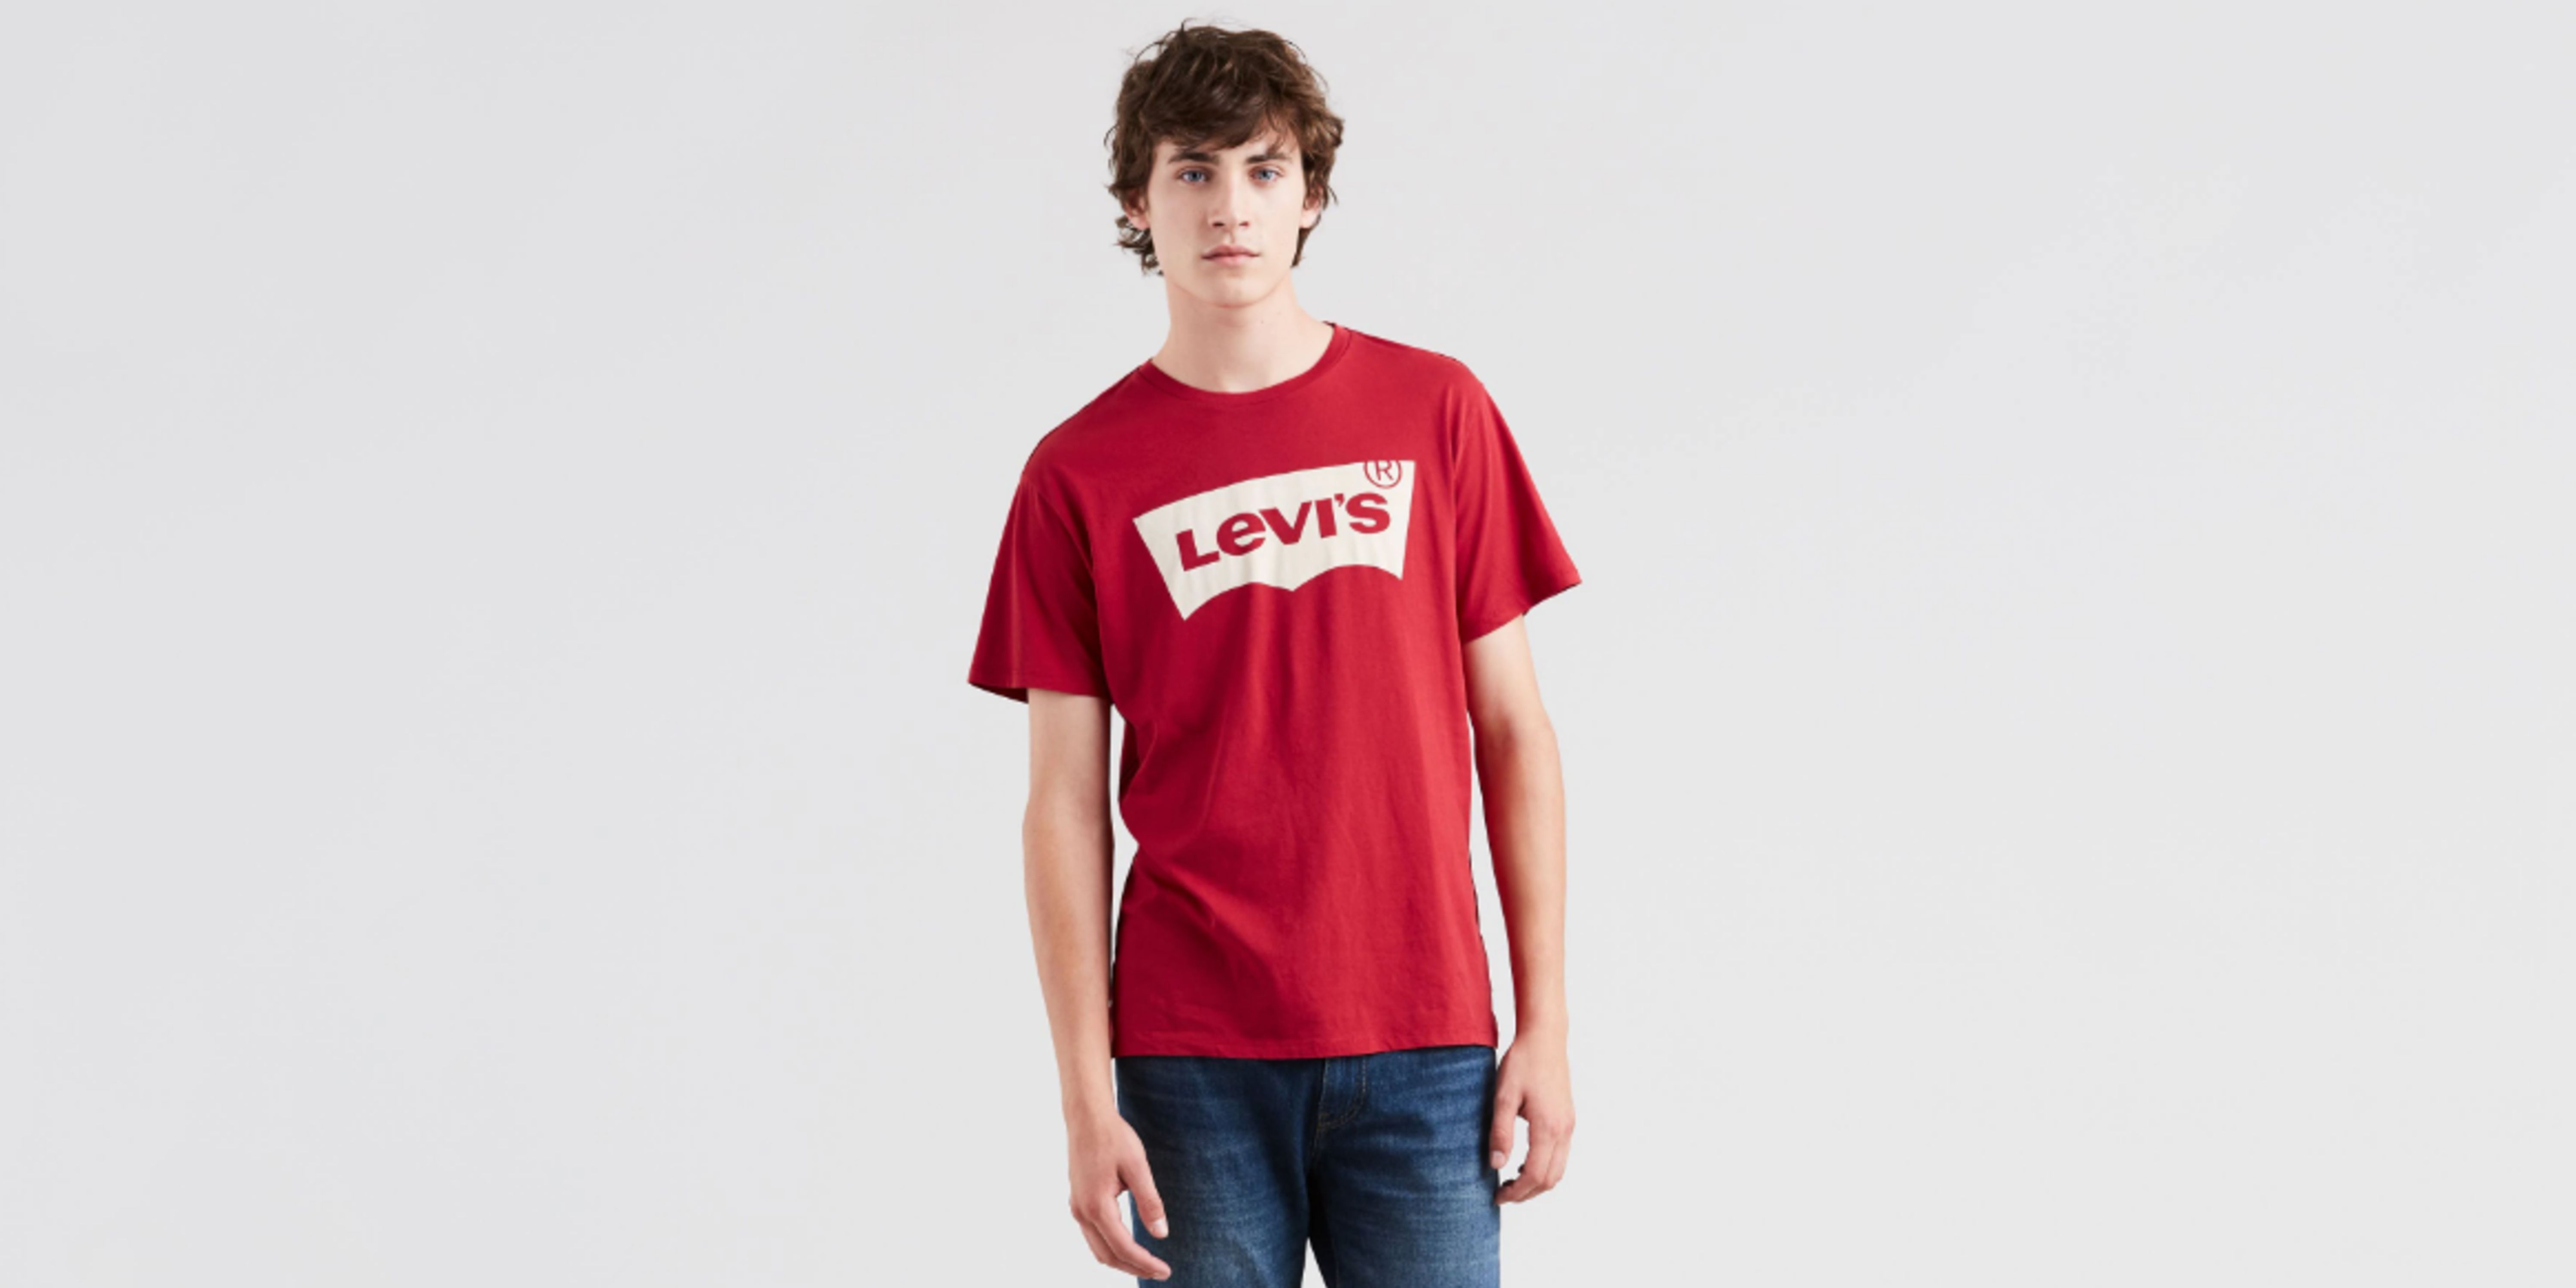 Buy > camisetas levi's hombre el corte ingles > in stock